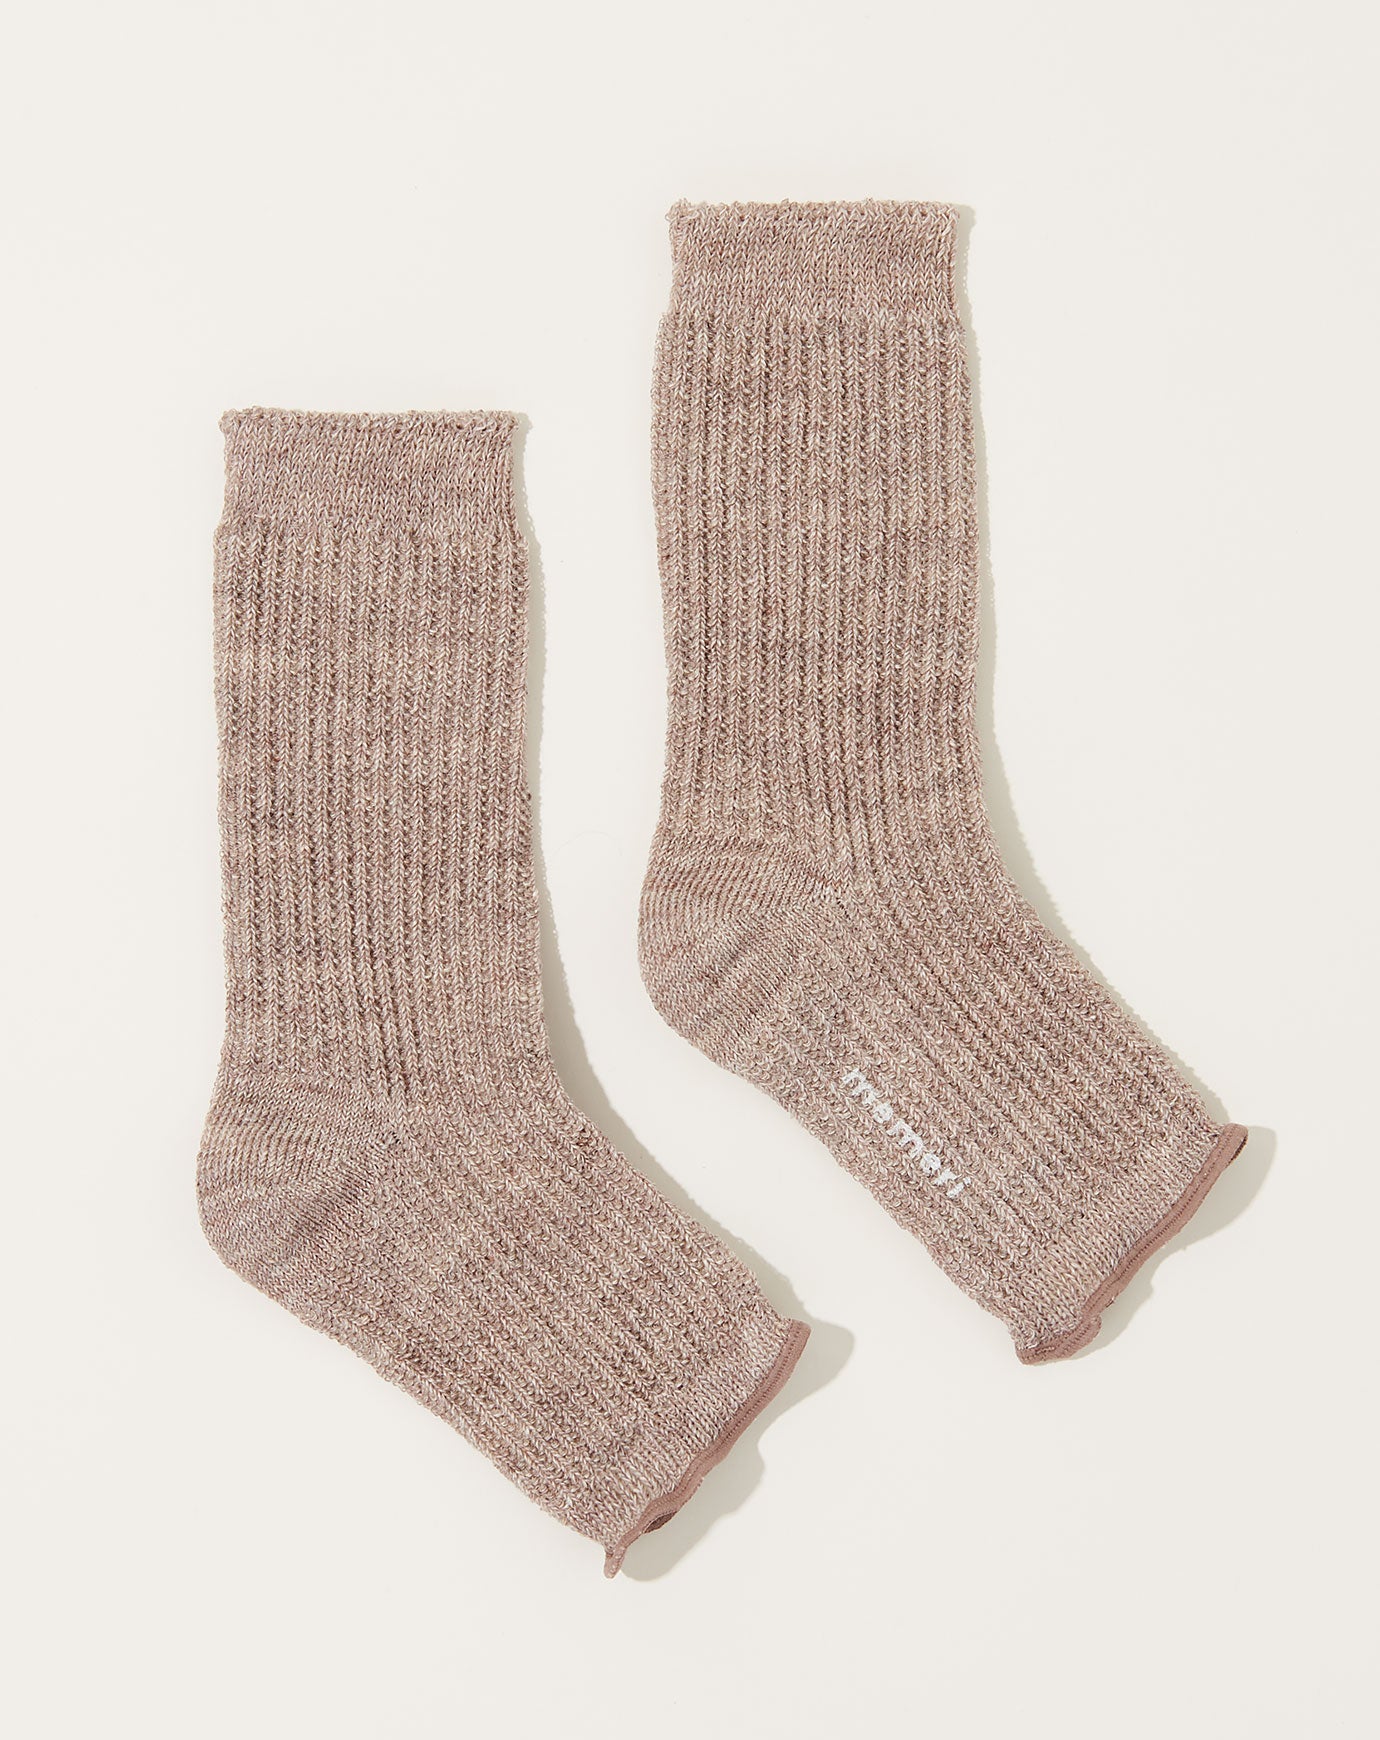 Nishiguchi Kutsushita Linen Sandal Socks in White Brown